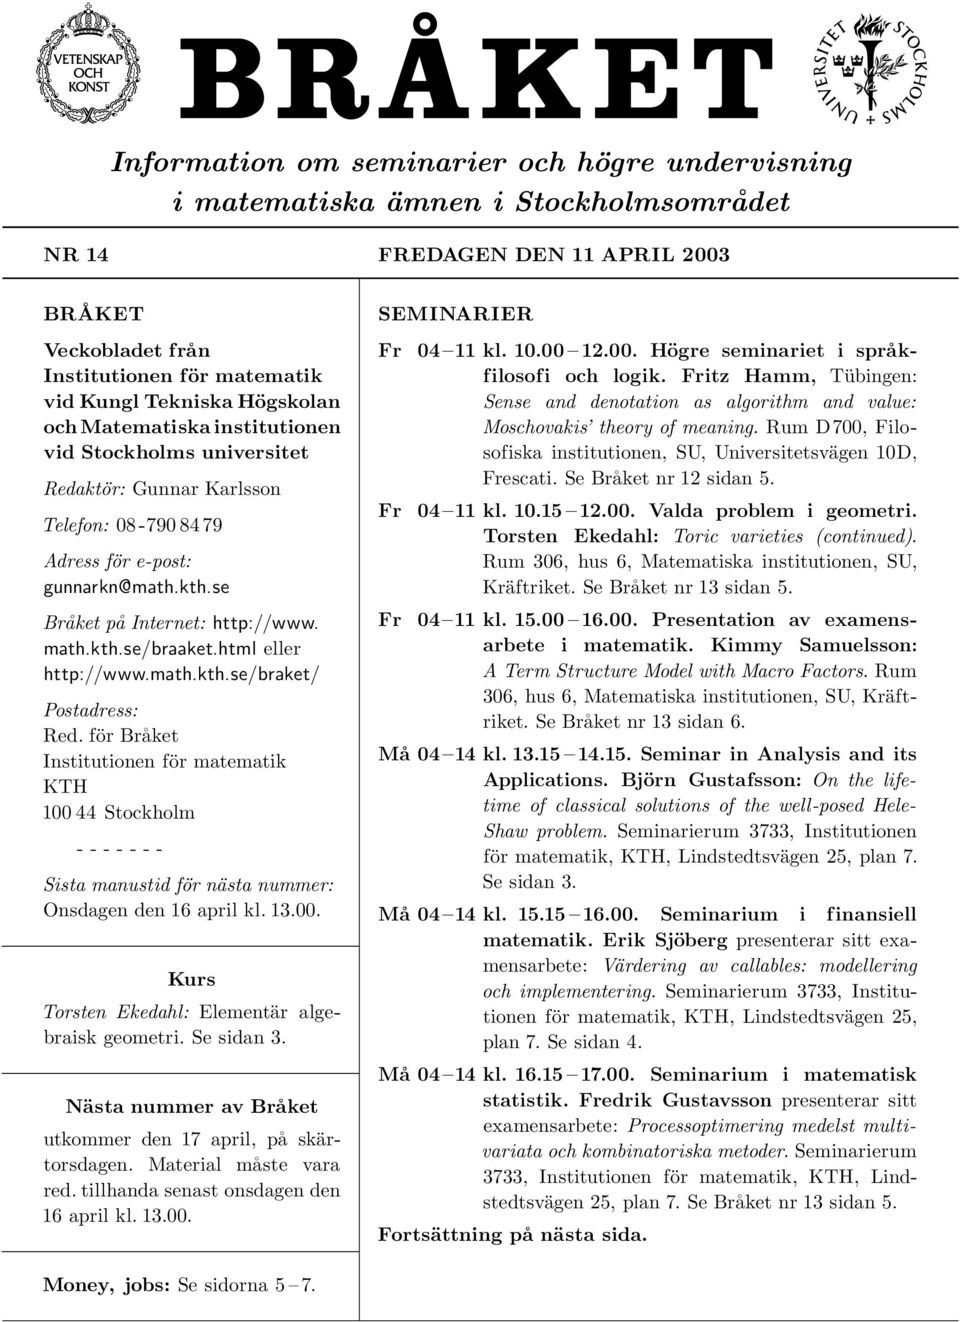 html eller http://www.math.kth.se/braket/ Postadress: Red. för Bra ket Institutionen för matematik KTH 100 44 Stockholm - - - - - - - Sista manustid för nästa nummer: Onsdagen den 16 april kl. 13.00. Kurs Torsten Ekedahl: Elementär algebraisk geometri.